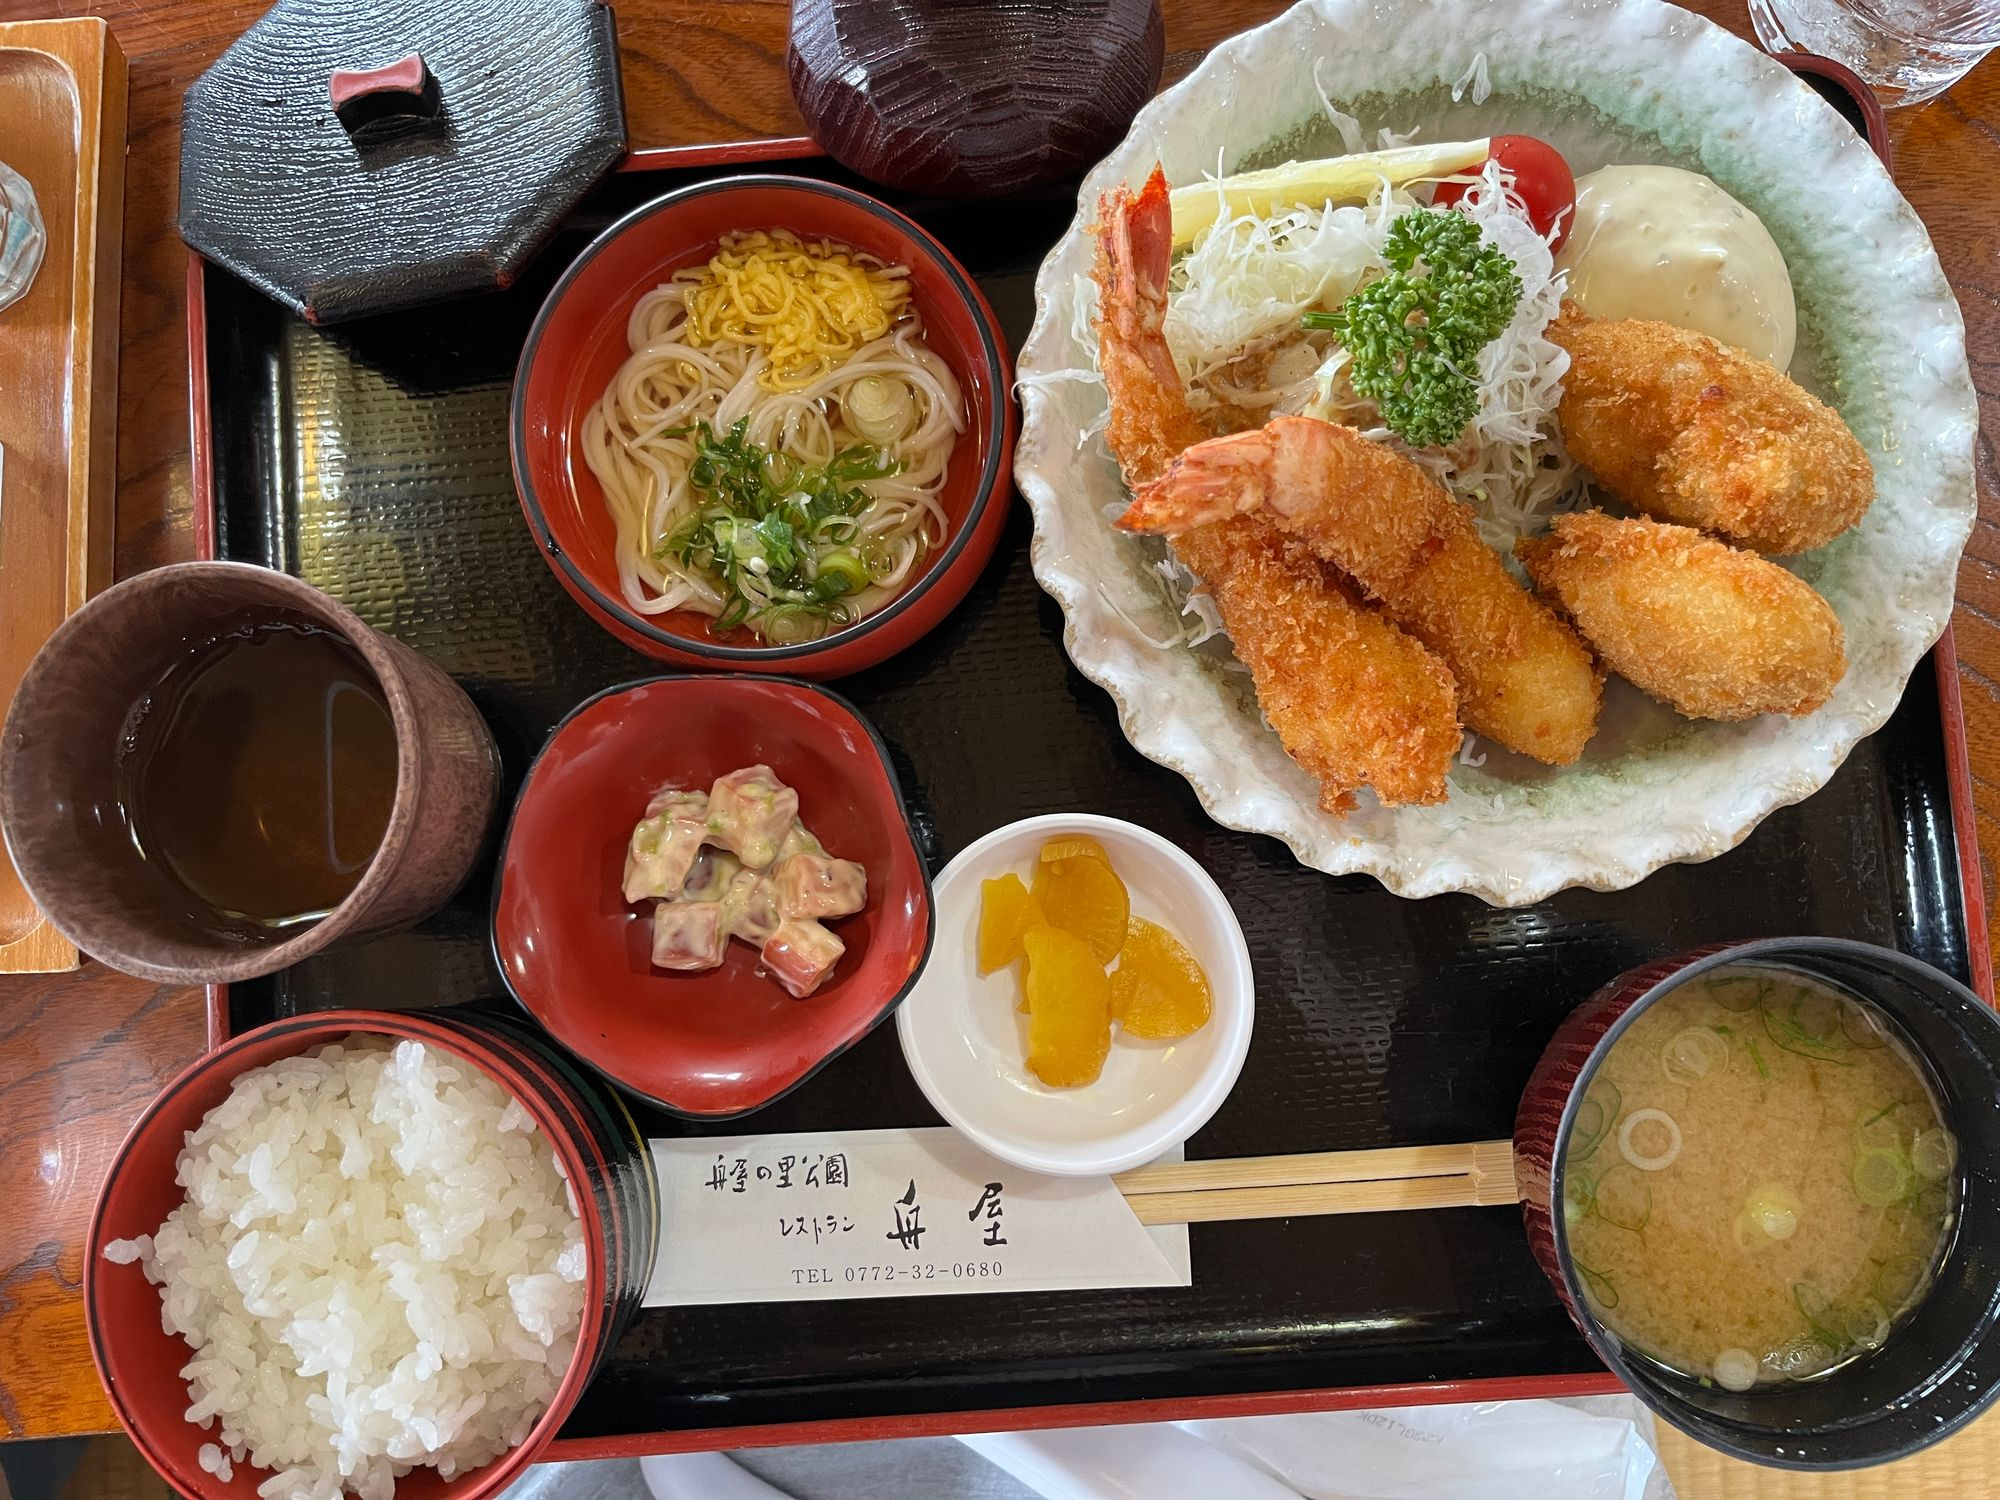 Một phần teishoku (定食) ở nhà hàng xịn xịn trong khu du lịch có giá khoảng 1000 yên (khoảng 180 ngàn đồng), phần này mình không nhớ chính xác nhưng chắc nó thuộc loại Tempura Teishoku